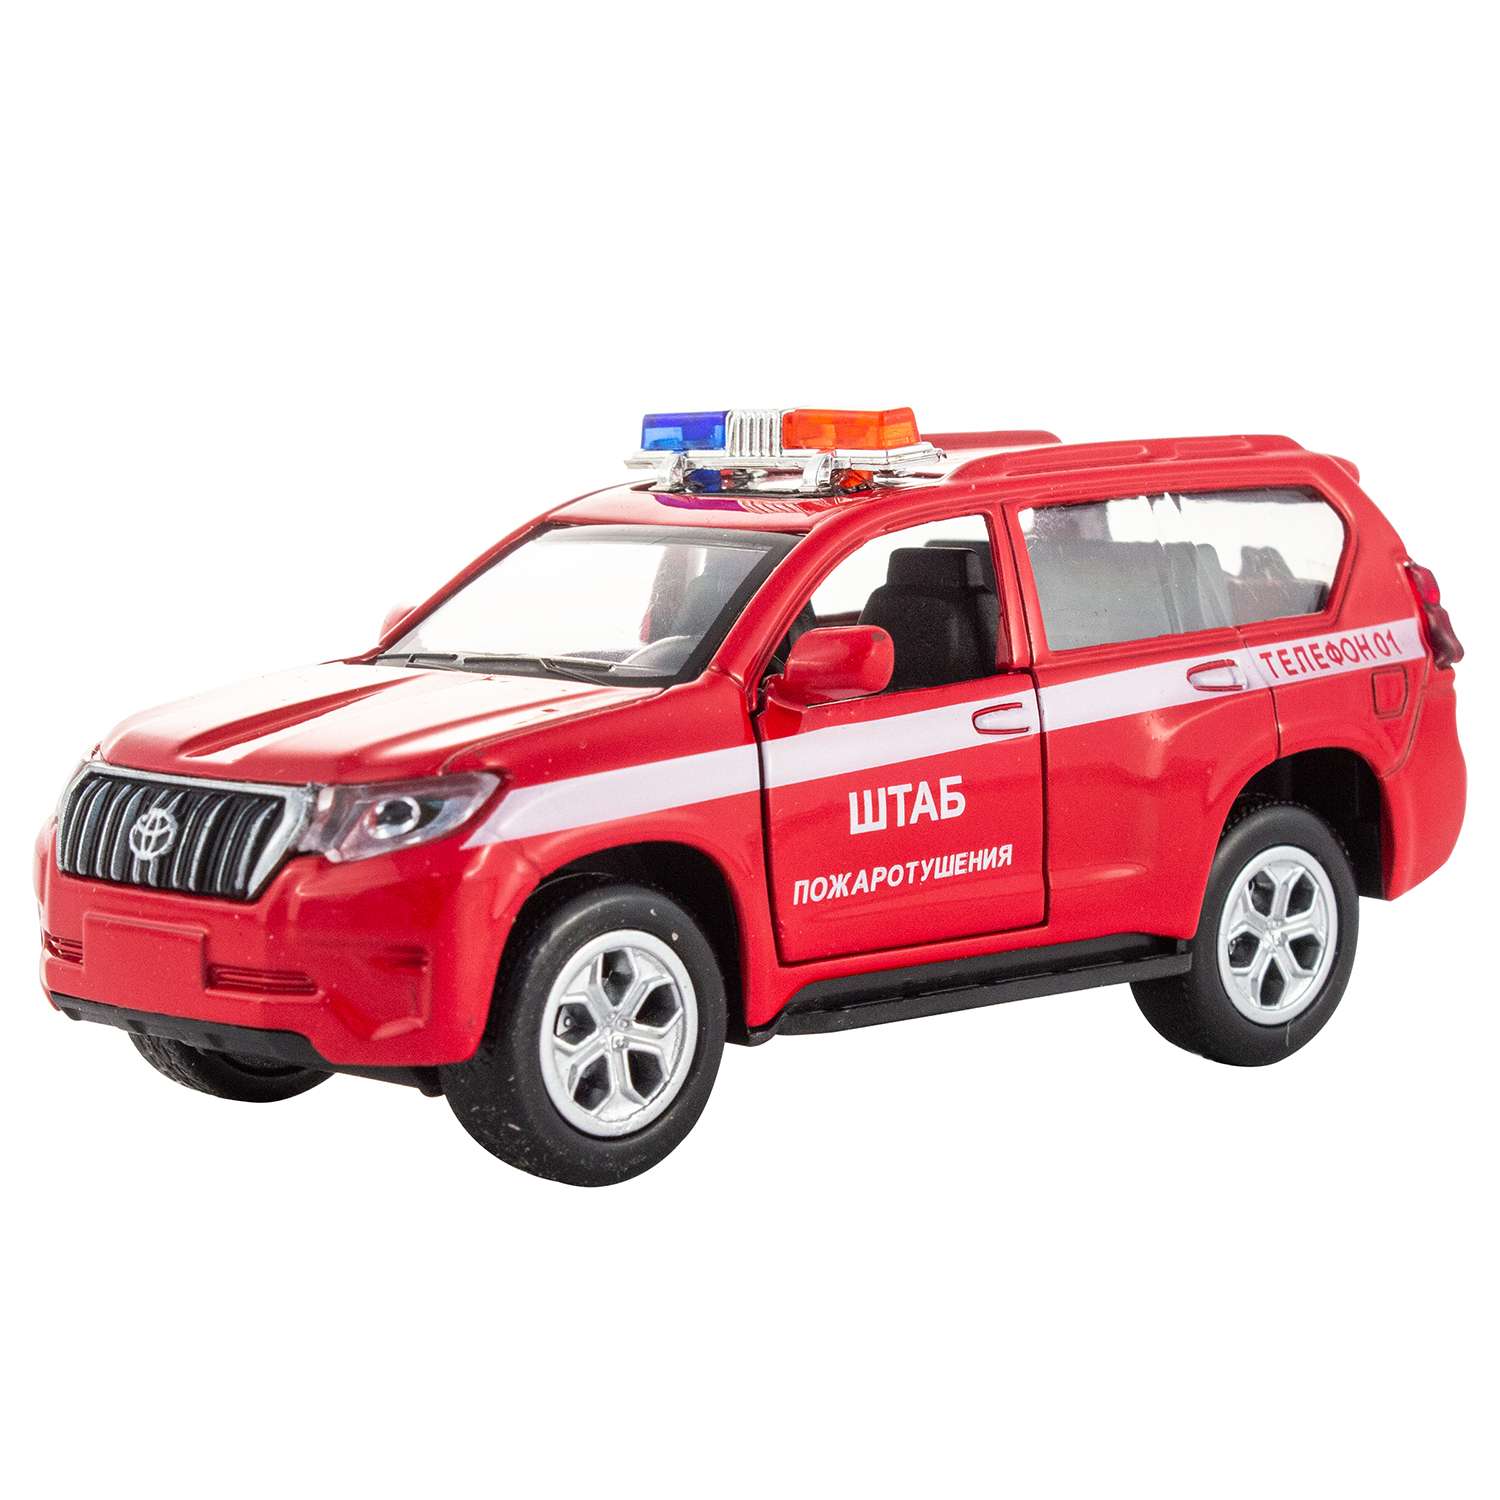 Машинка KiddieDrive Toyota Prado пожарный красный инерционный механизм свет/звук 1901018_3 - фото 1